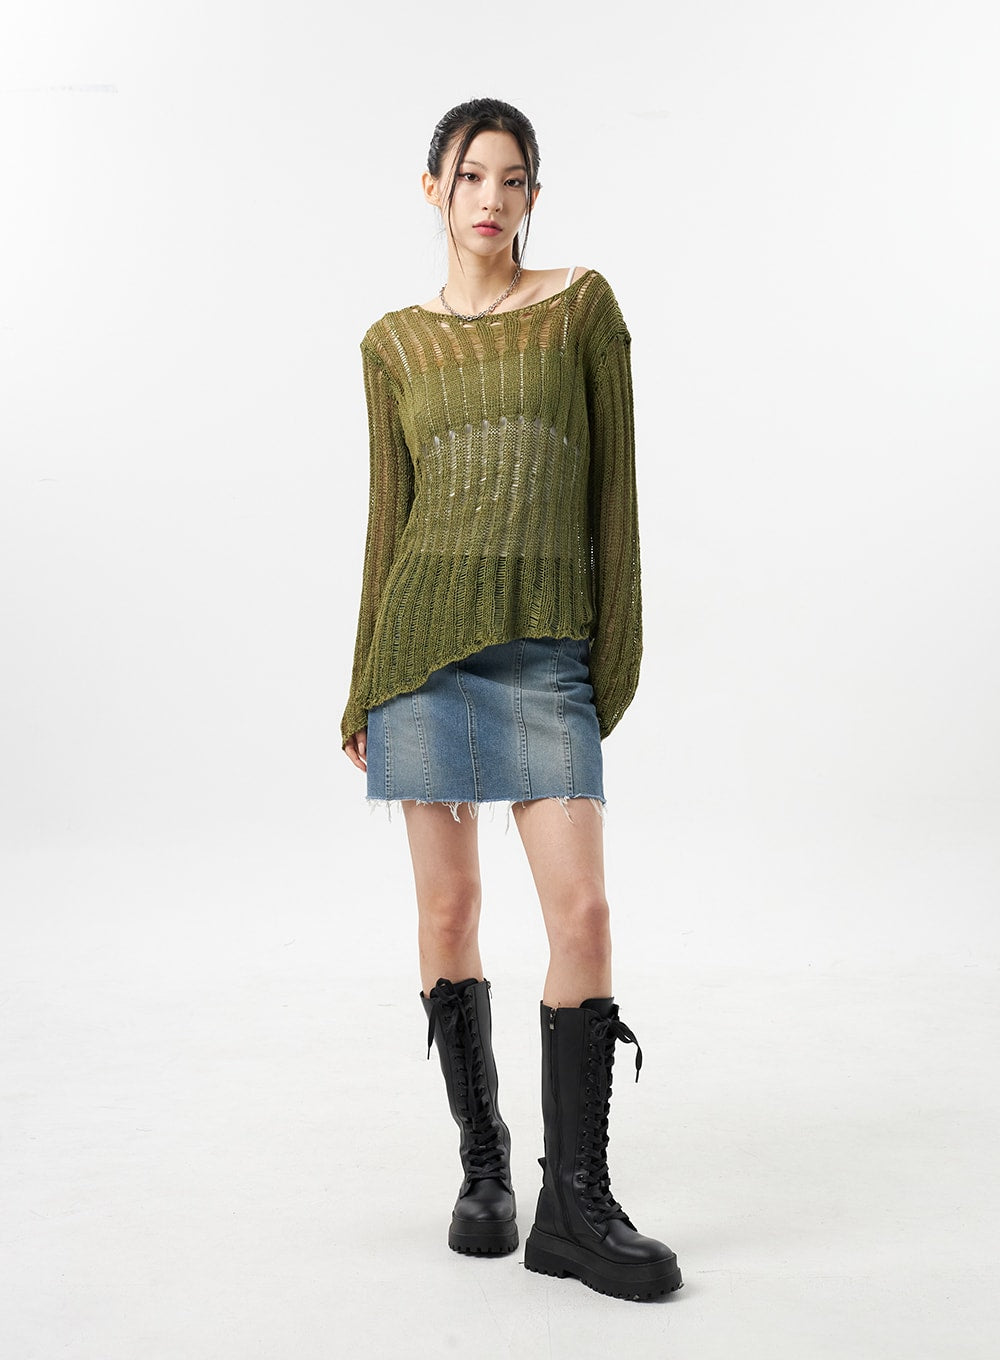 mesh-sweater-cu309